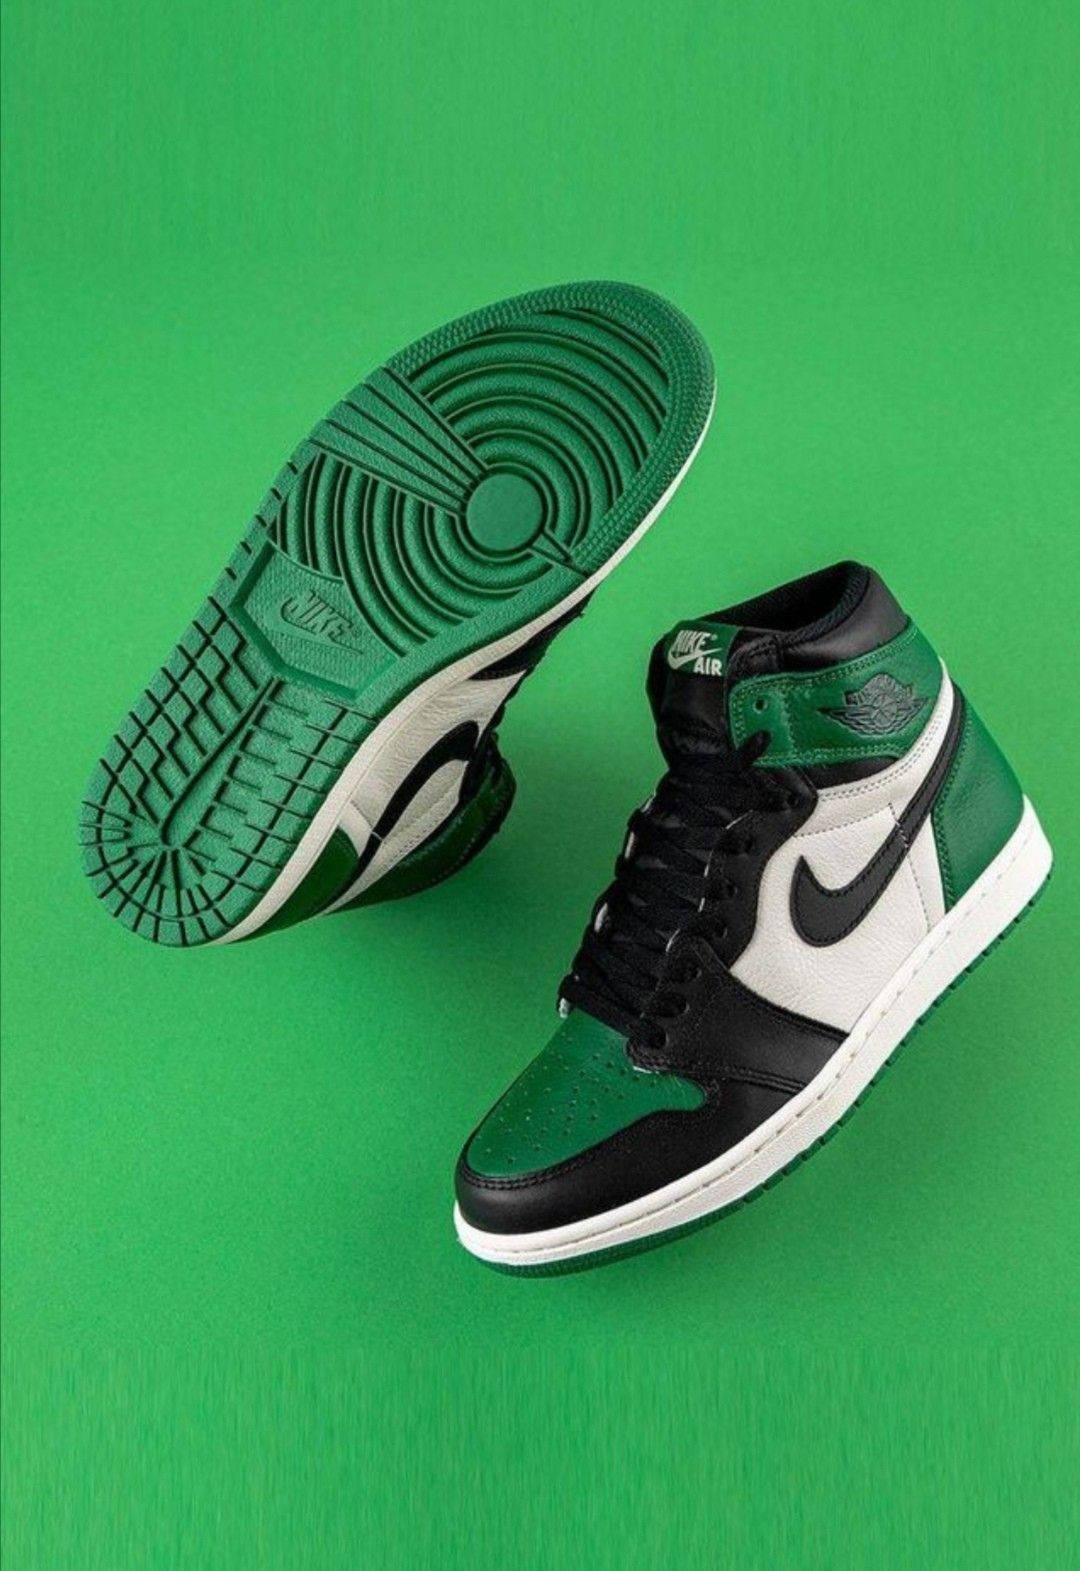 Nike Air Jordan 1 Retro OG grøn og sort Wallpaper